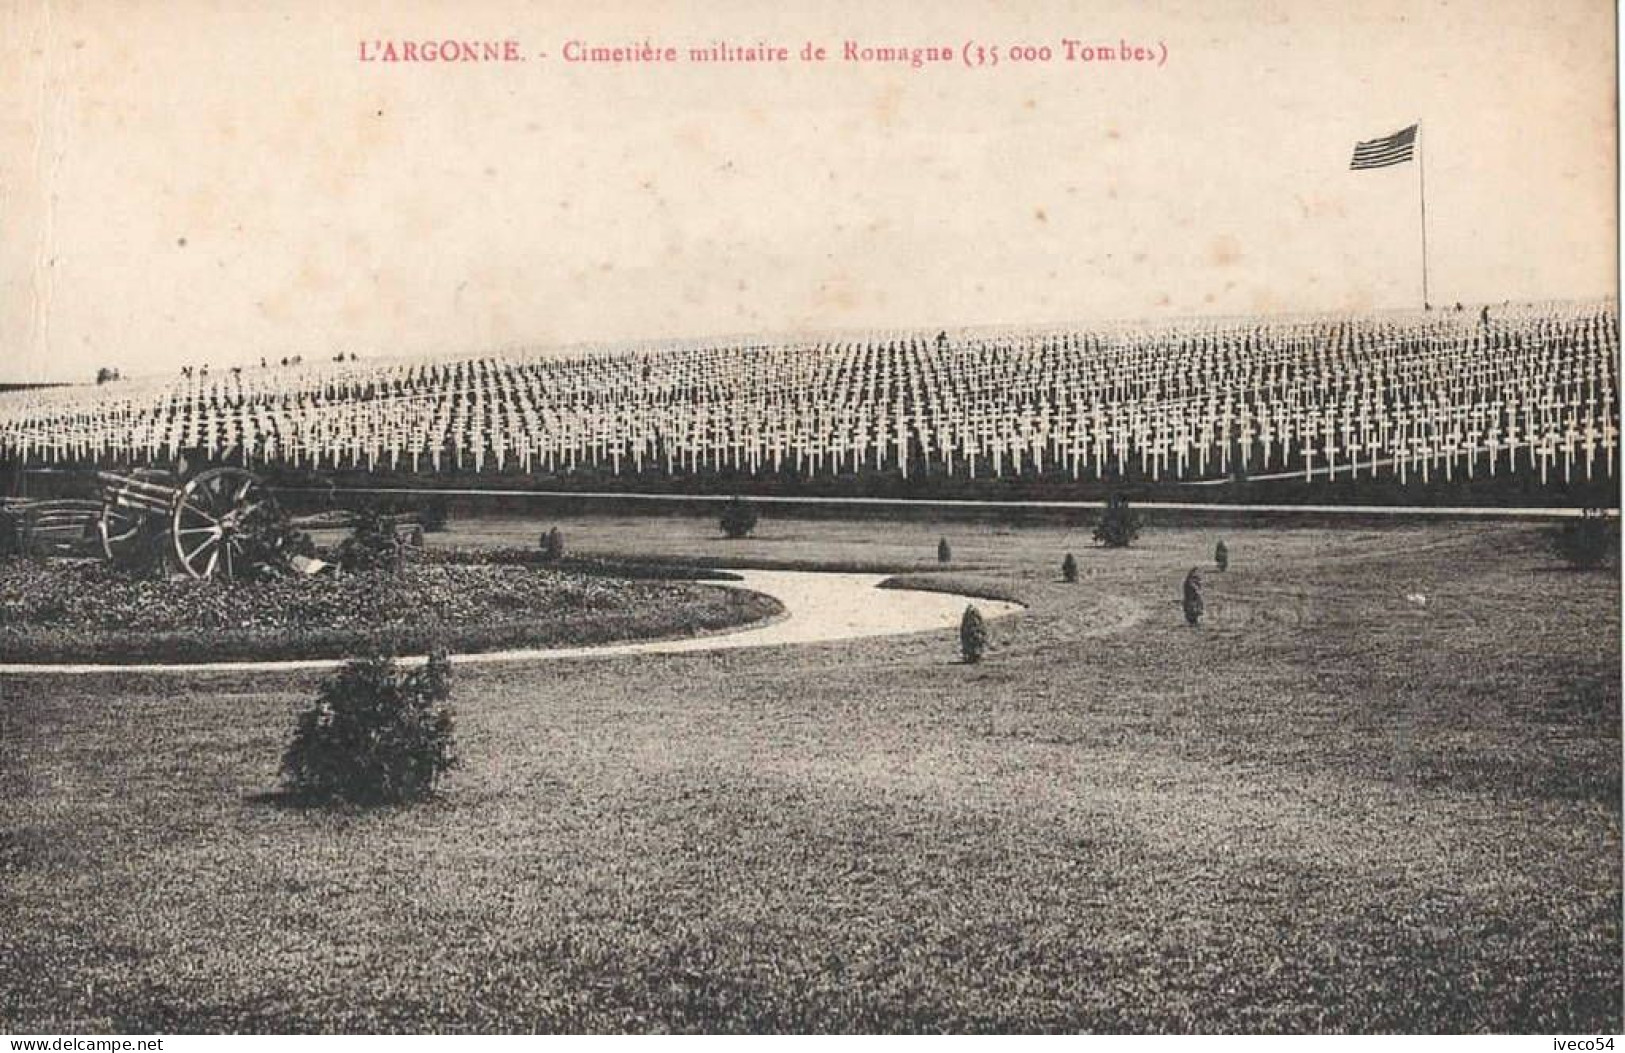 Meuse  / Argonne  Cimetière Militaire Américain     Romagne S/s Montfaucon   ( 35000  Tombes ) - Cementerios De Los Caídos De Guerra